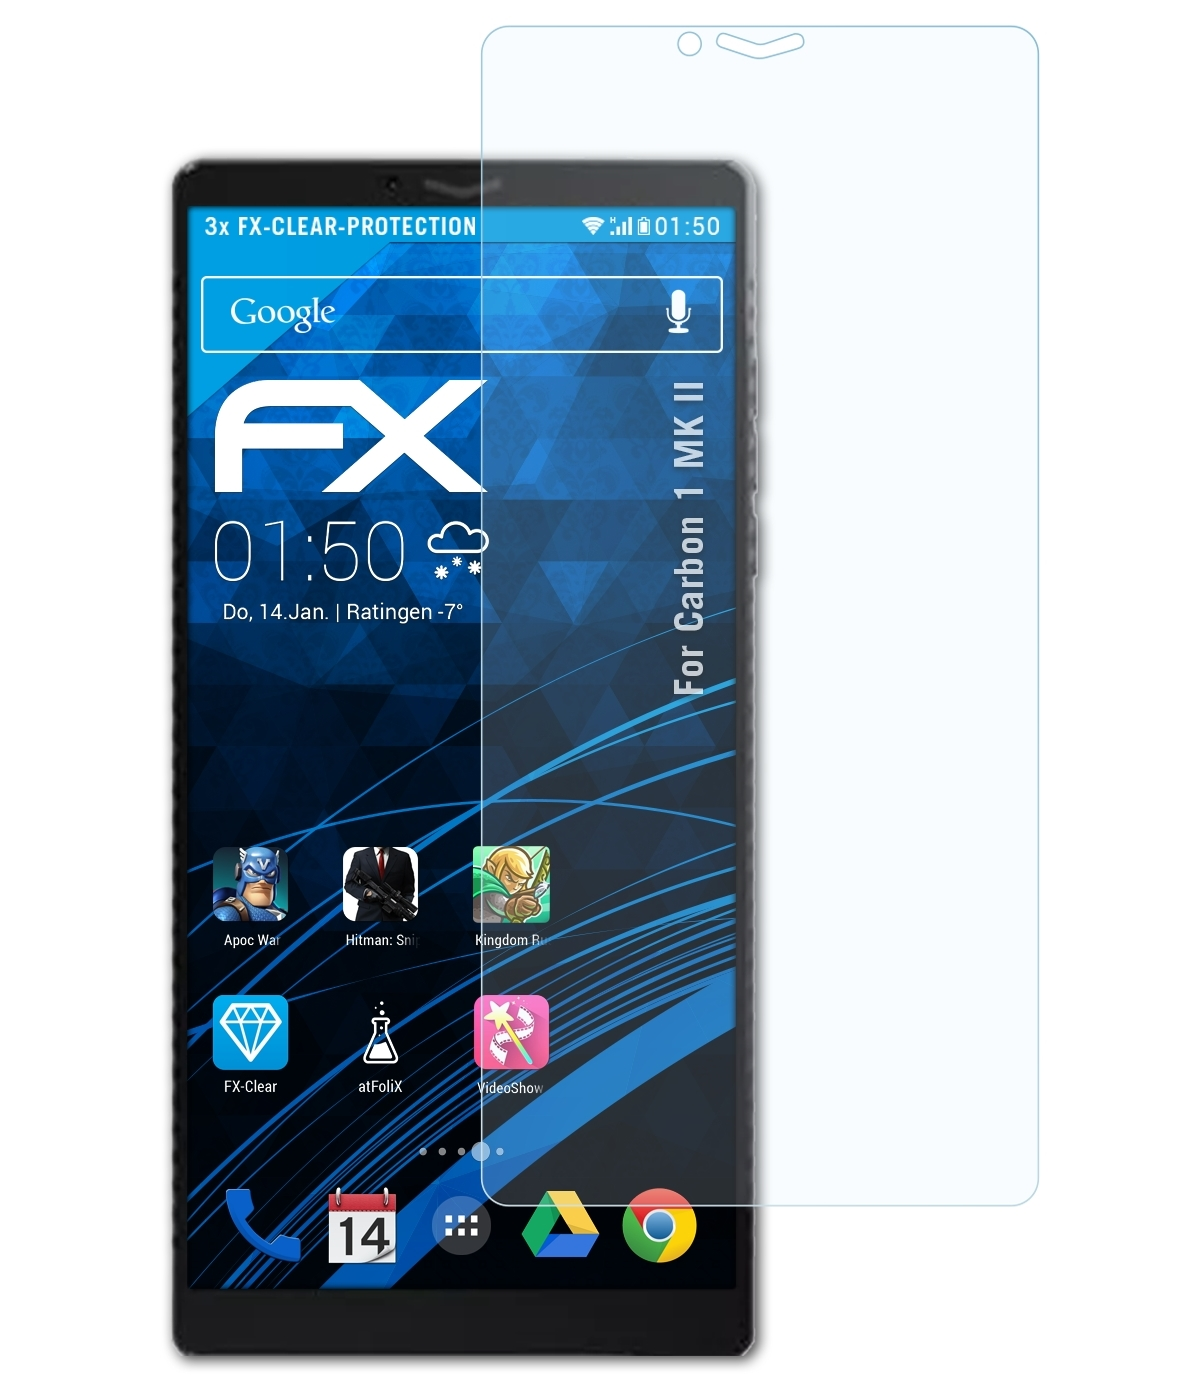 ATFOLIX 3x Carbon Displayschutz(für FX-Clear 1 MK II)